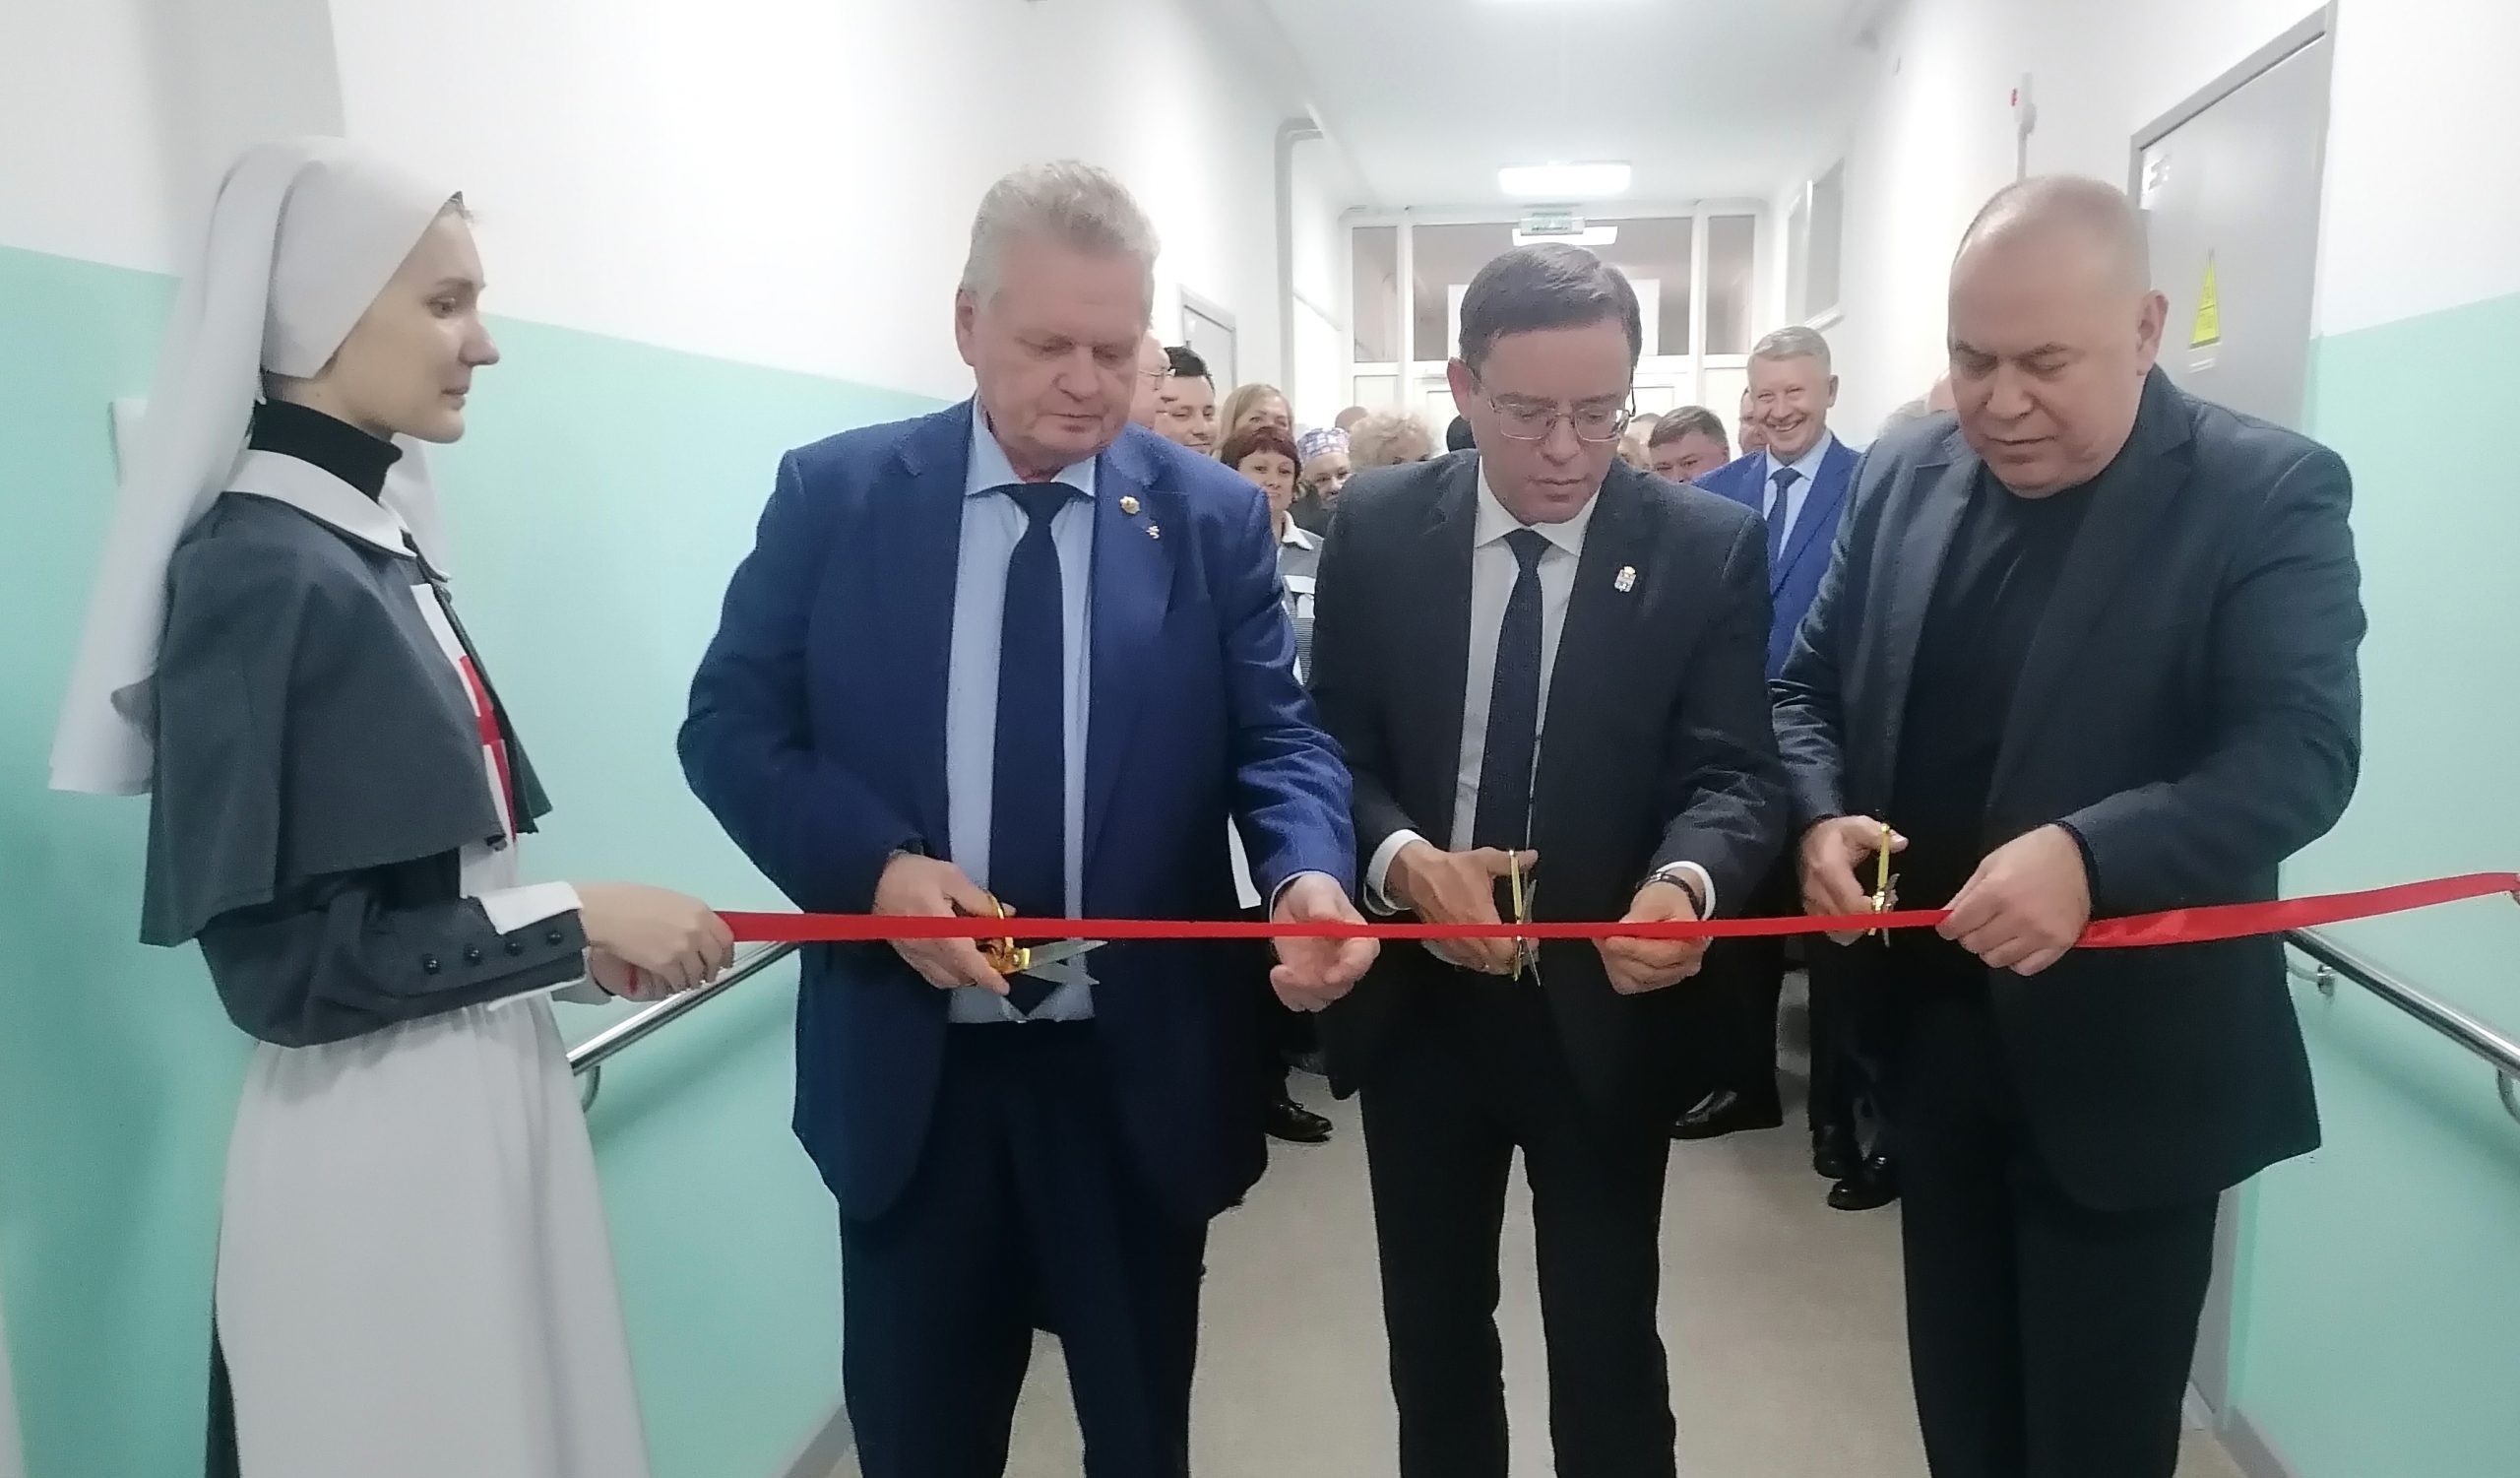 Гериатрическое отделение для пациентов старшего возраста открыли в Каменске-Уральском